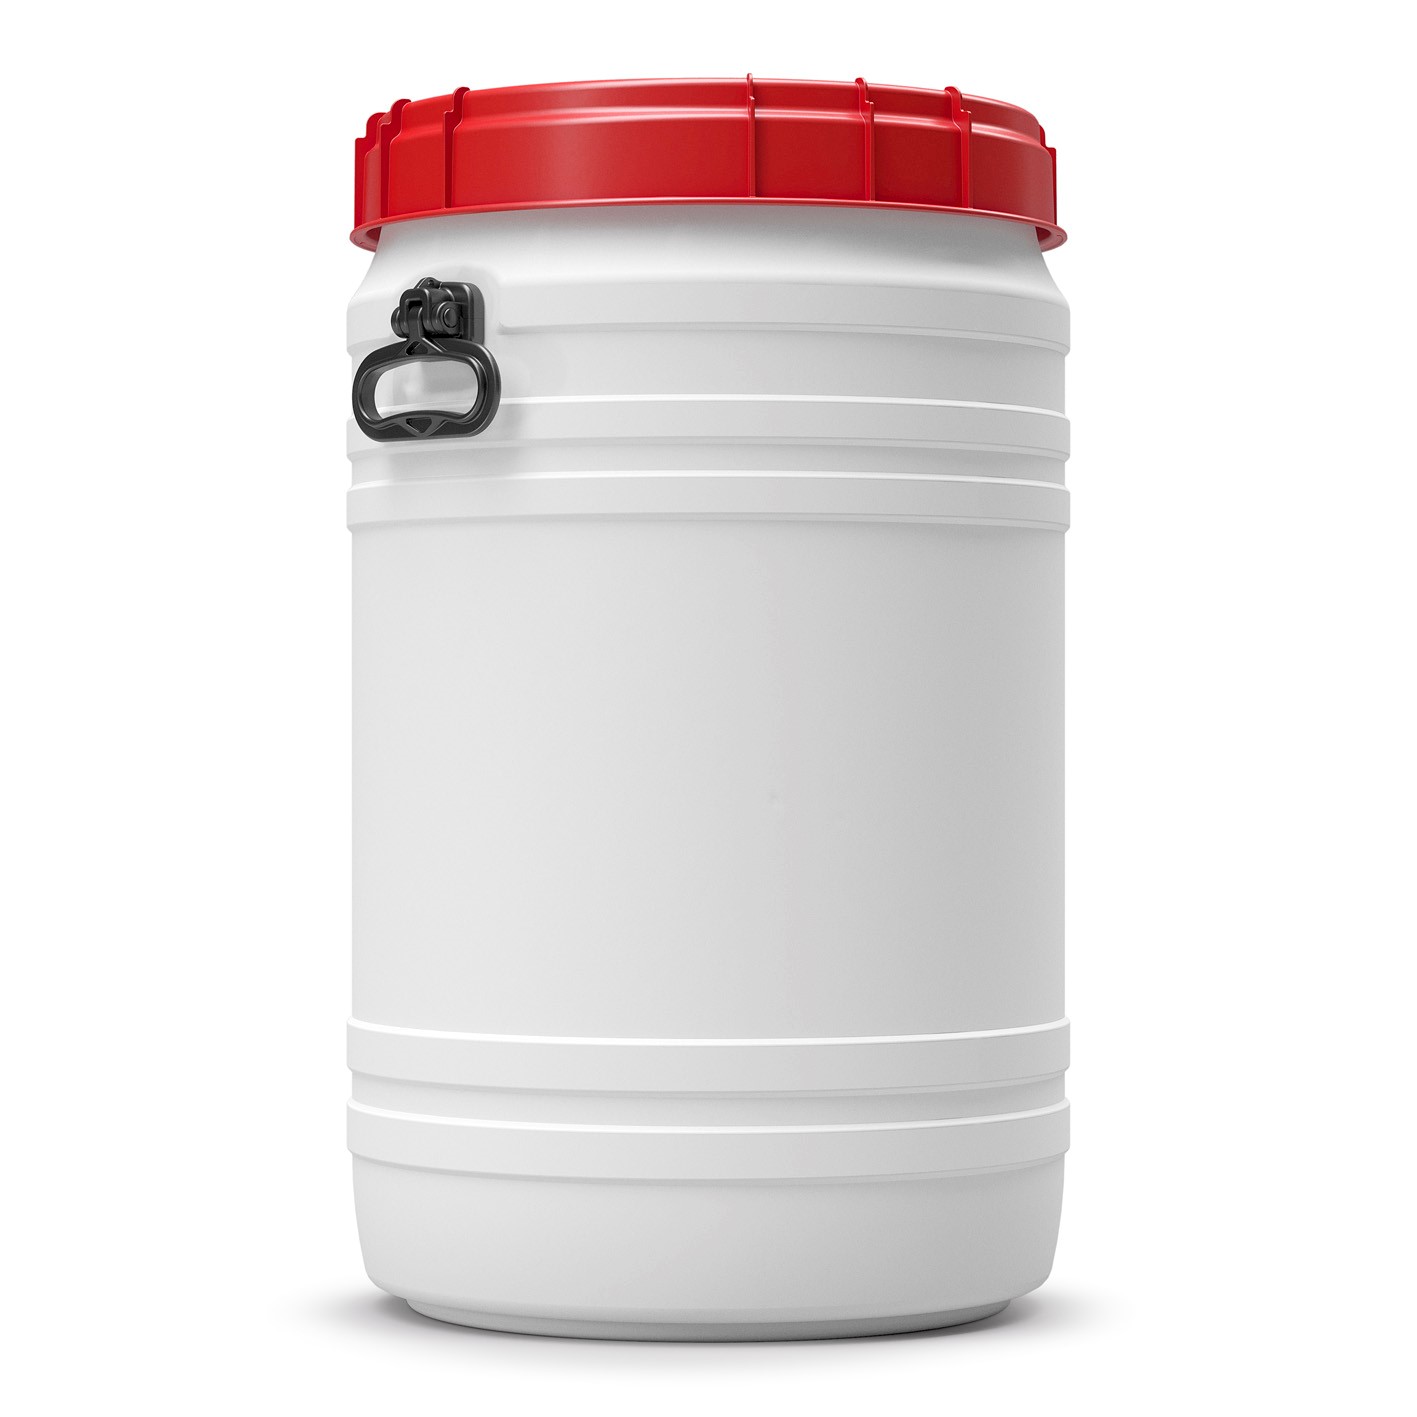 75 Liter Total Opening Drum - 1